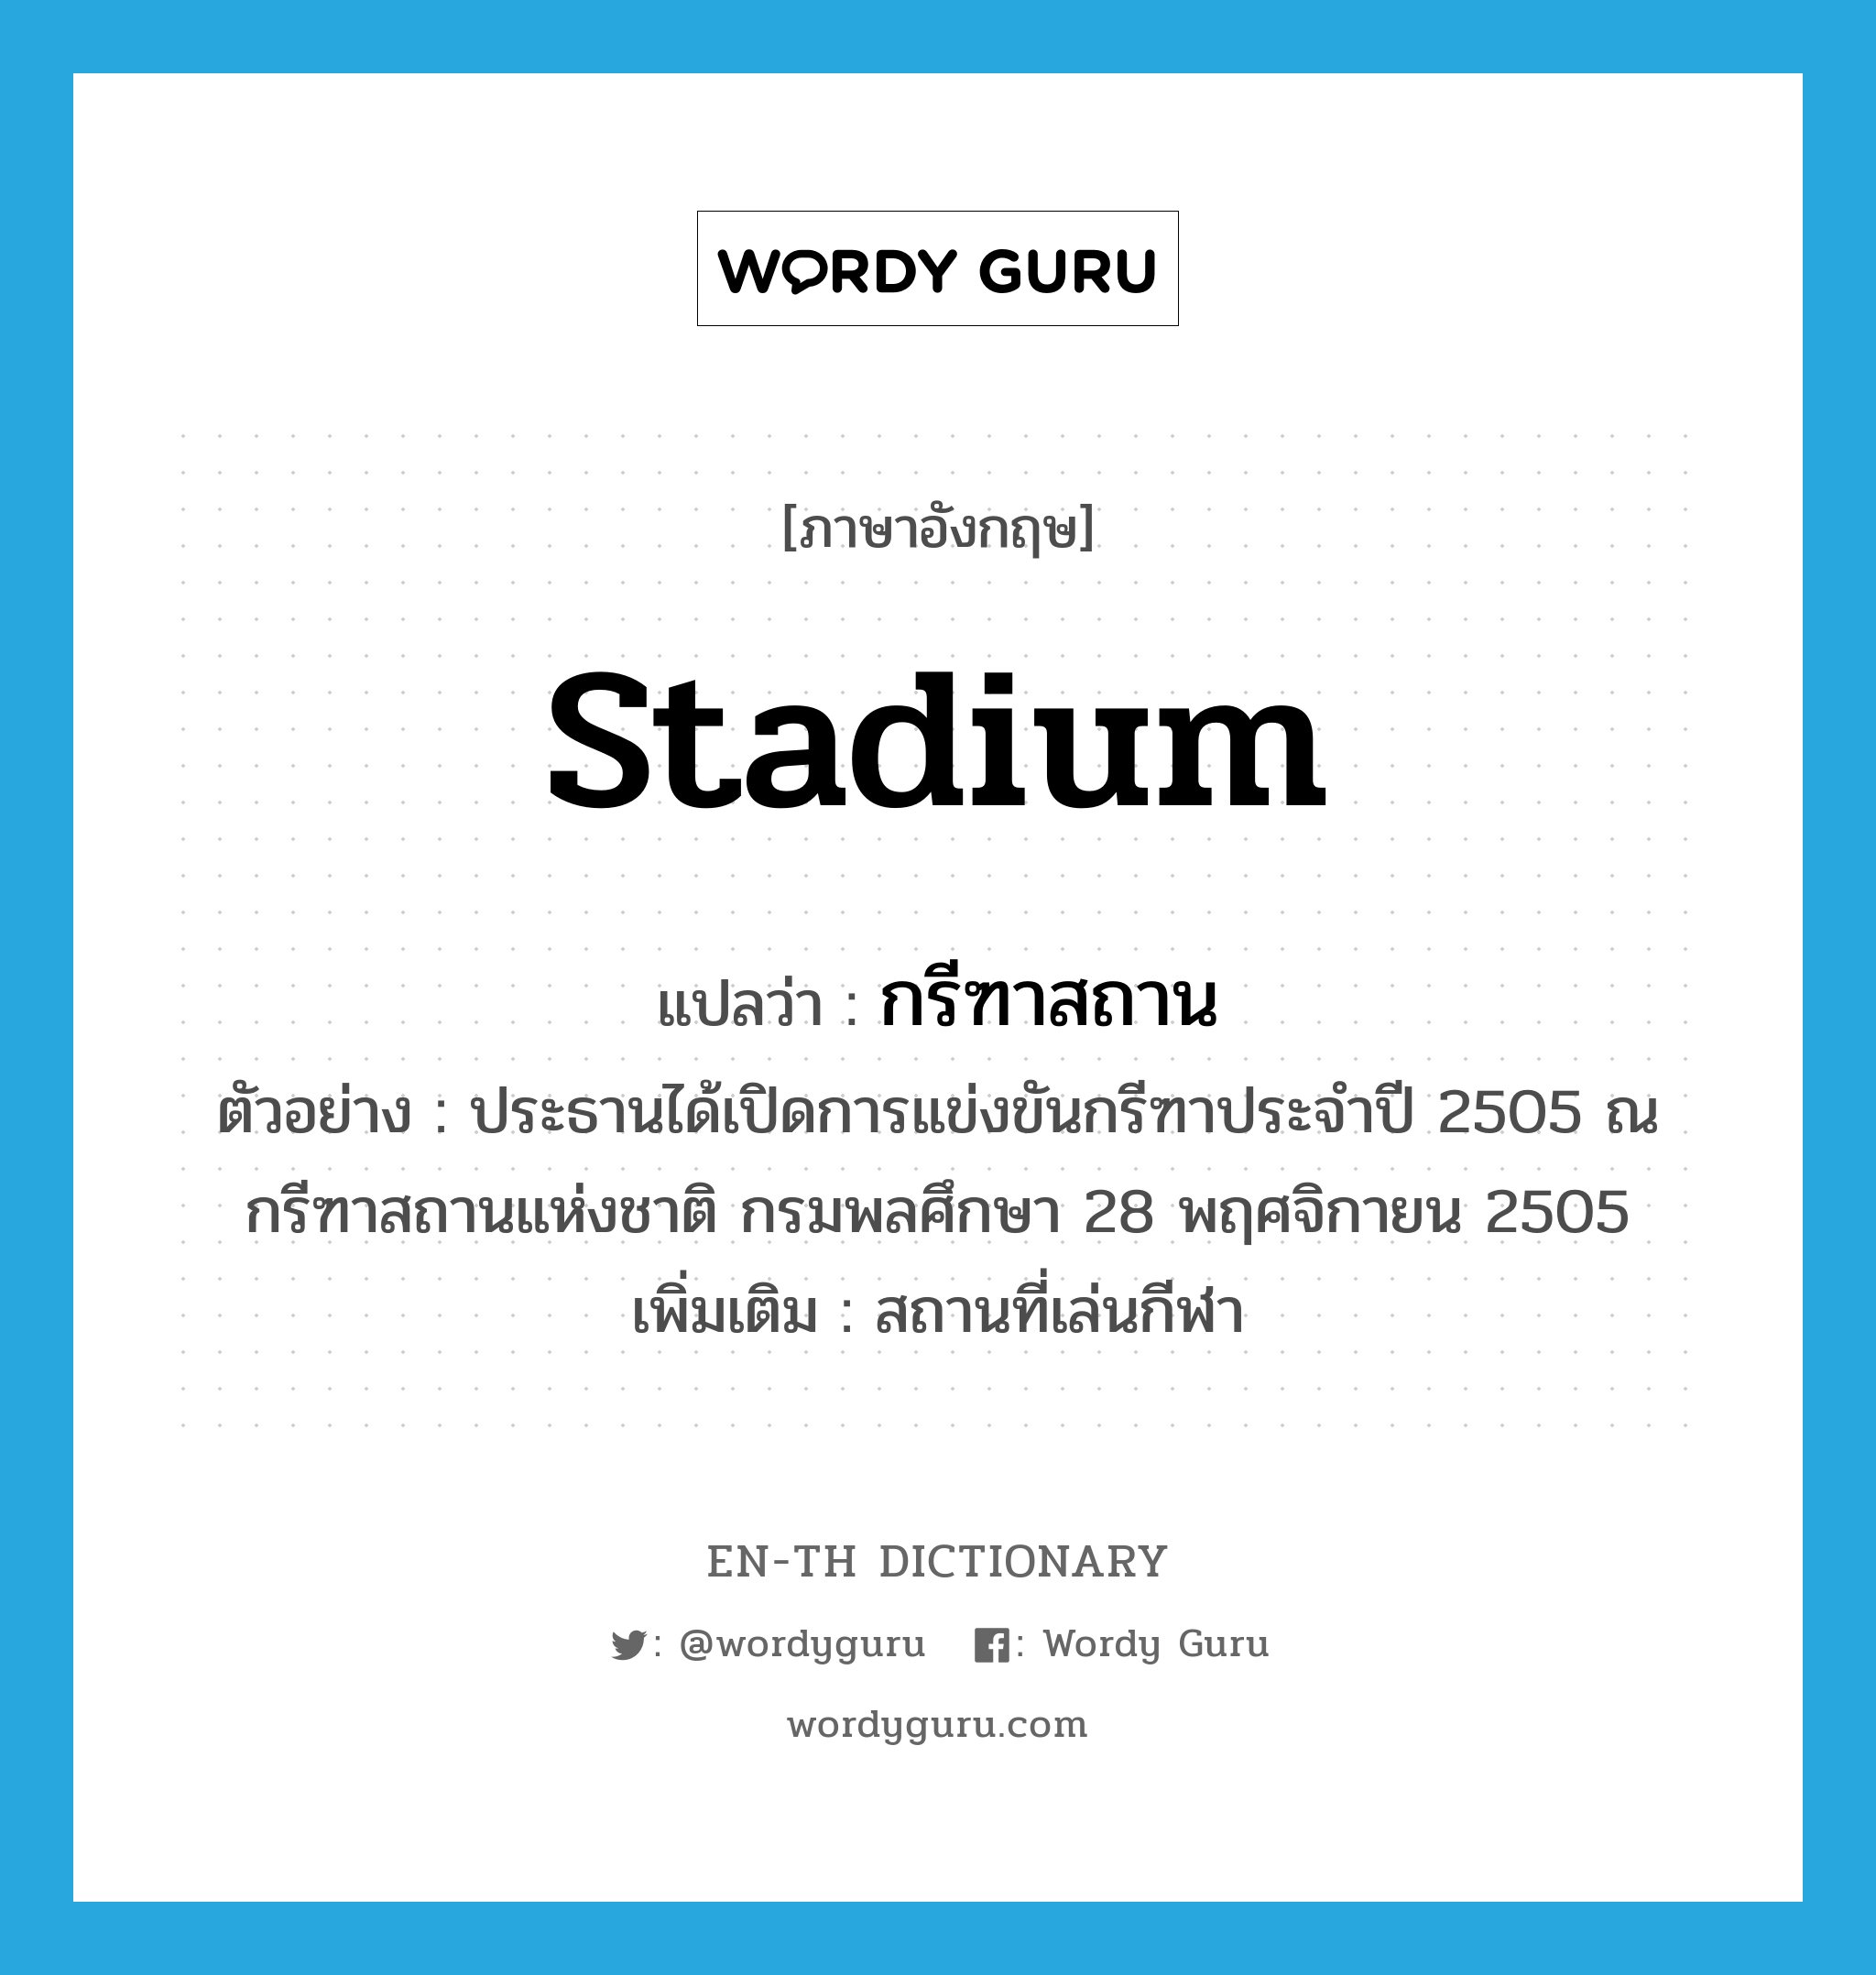 stadium แปลว่า?, คำศัพท์ภาษาอังกฤษ stadium แปลว่า กรีฑาสถาน ประเภท N ตัวอย่าง ประธานได้เปิดการแข่งขันกรีฑาประจำปี 2505 ณ กรีฑาสถานแห่งชาติ กรมพลศึกษา 28 พฤศจิกายน 2505 เพิ่มเติม สถานที่เล่นกีฬา หมวด N